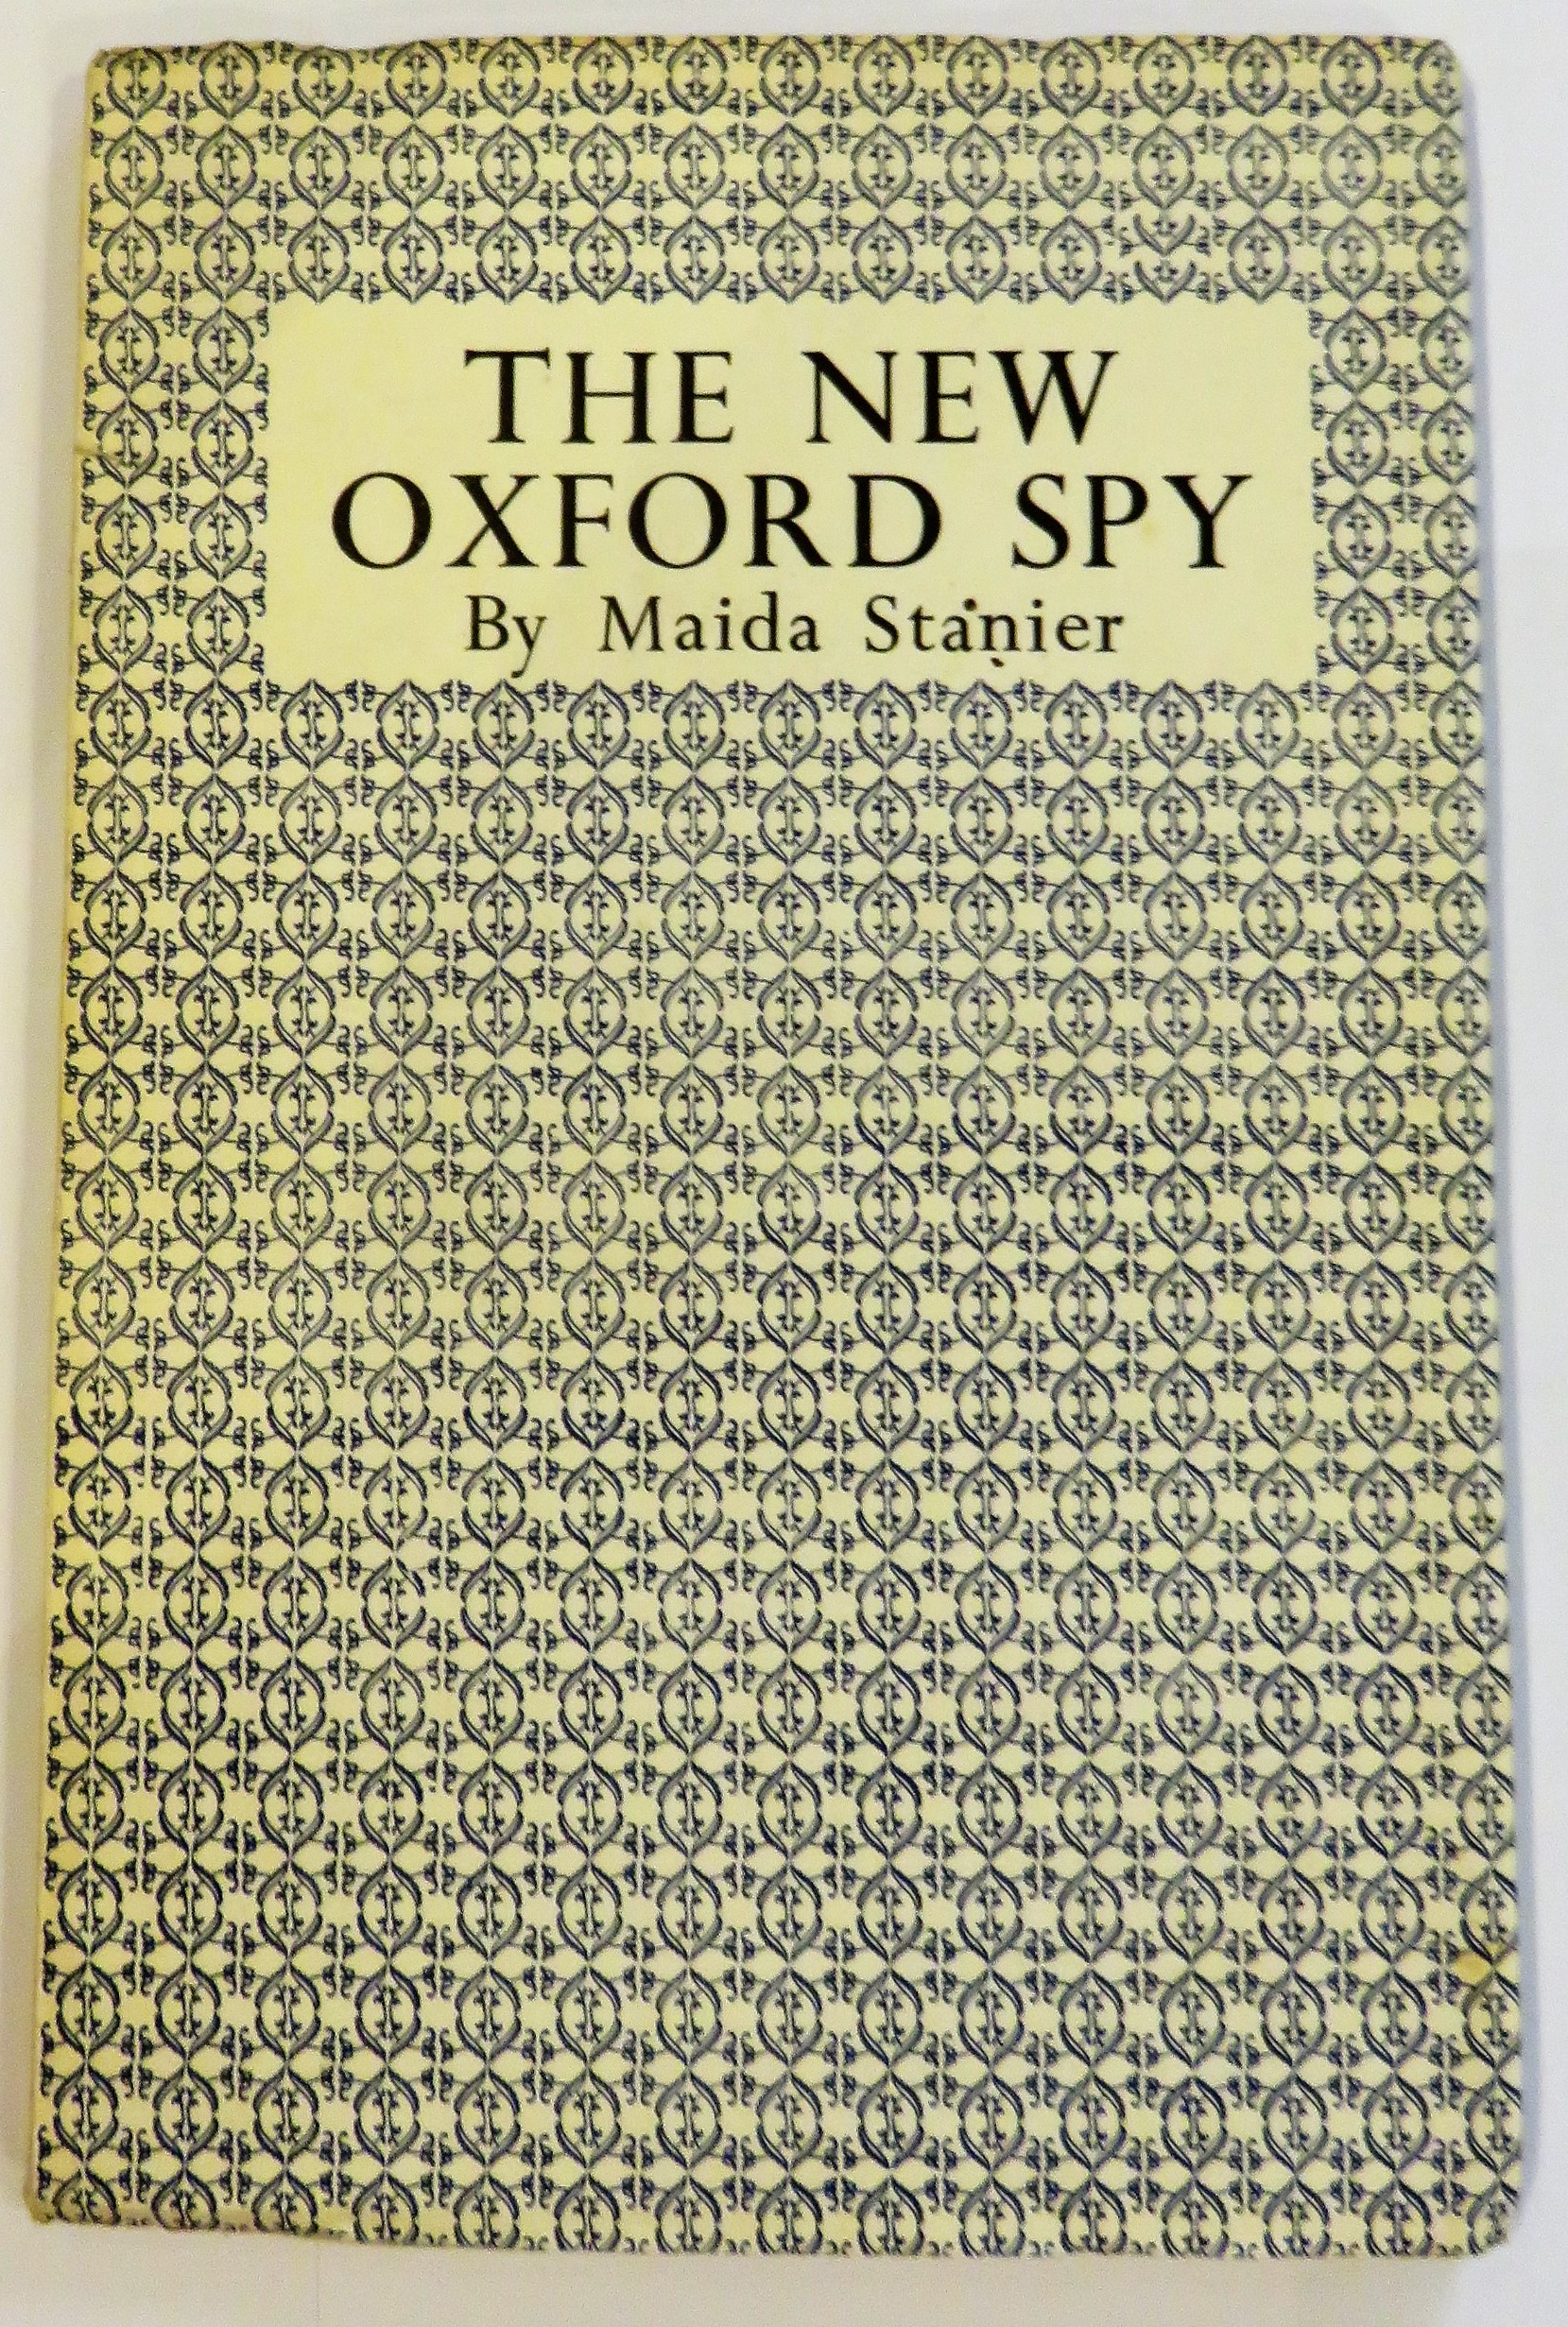 The New Oxford Spy